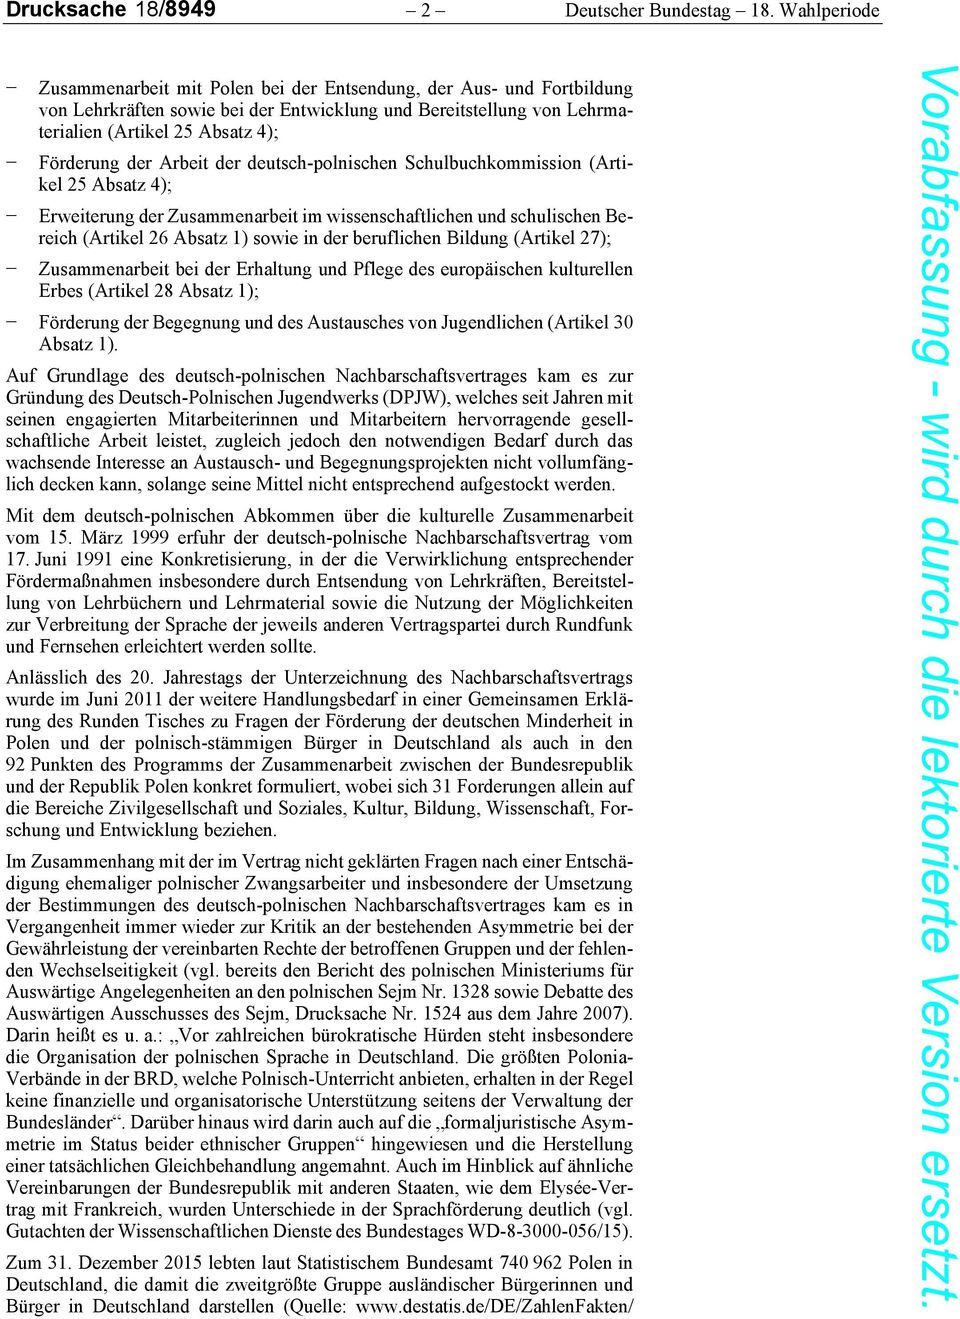 Arbeit der deutsch-polnischen Schulbuchkommission (Artikel 25 Absatz 4); Erweiterung der Zusammenarbeit im wissenschaftlichen und schulischen Bereich (Artikel 26 Absatz 1) sowie in der beruflichen